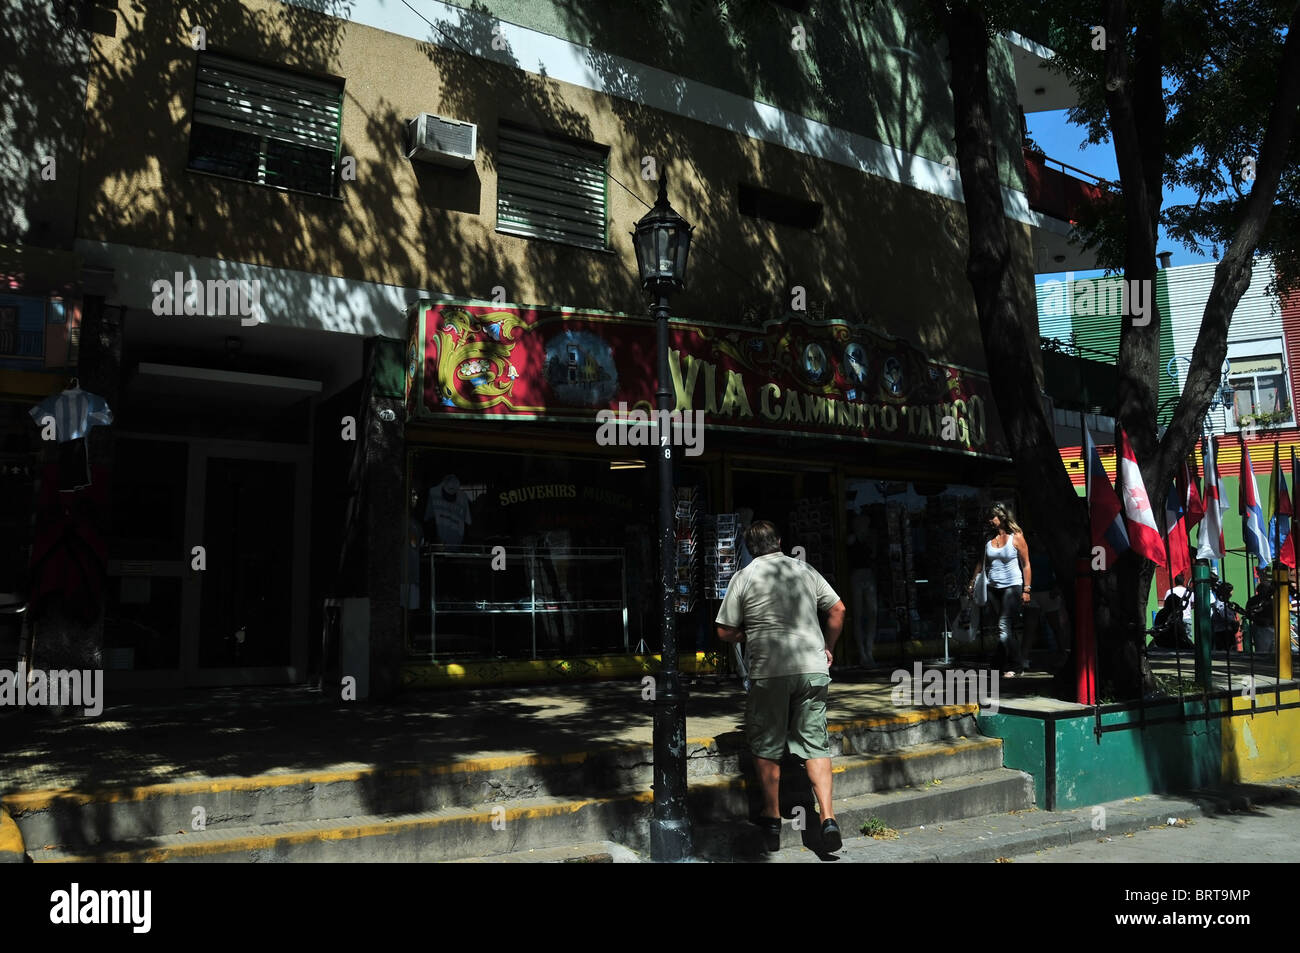 Mann Klettern Schritte vor einem Geschäft namens "Caminito Tango", mit touristischen Souvenirs, Caminito, La Boca, Buenos Aires Stockfoto